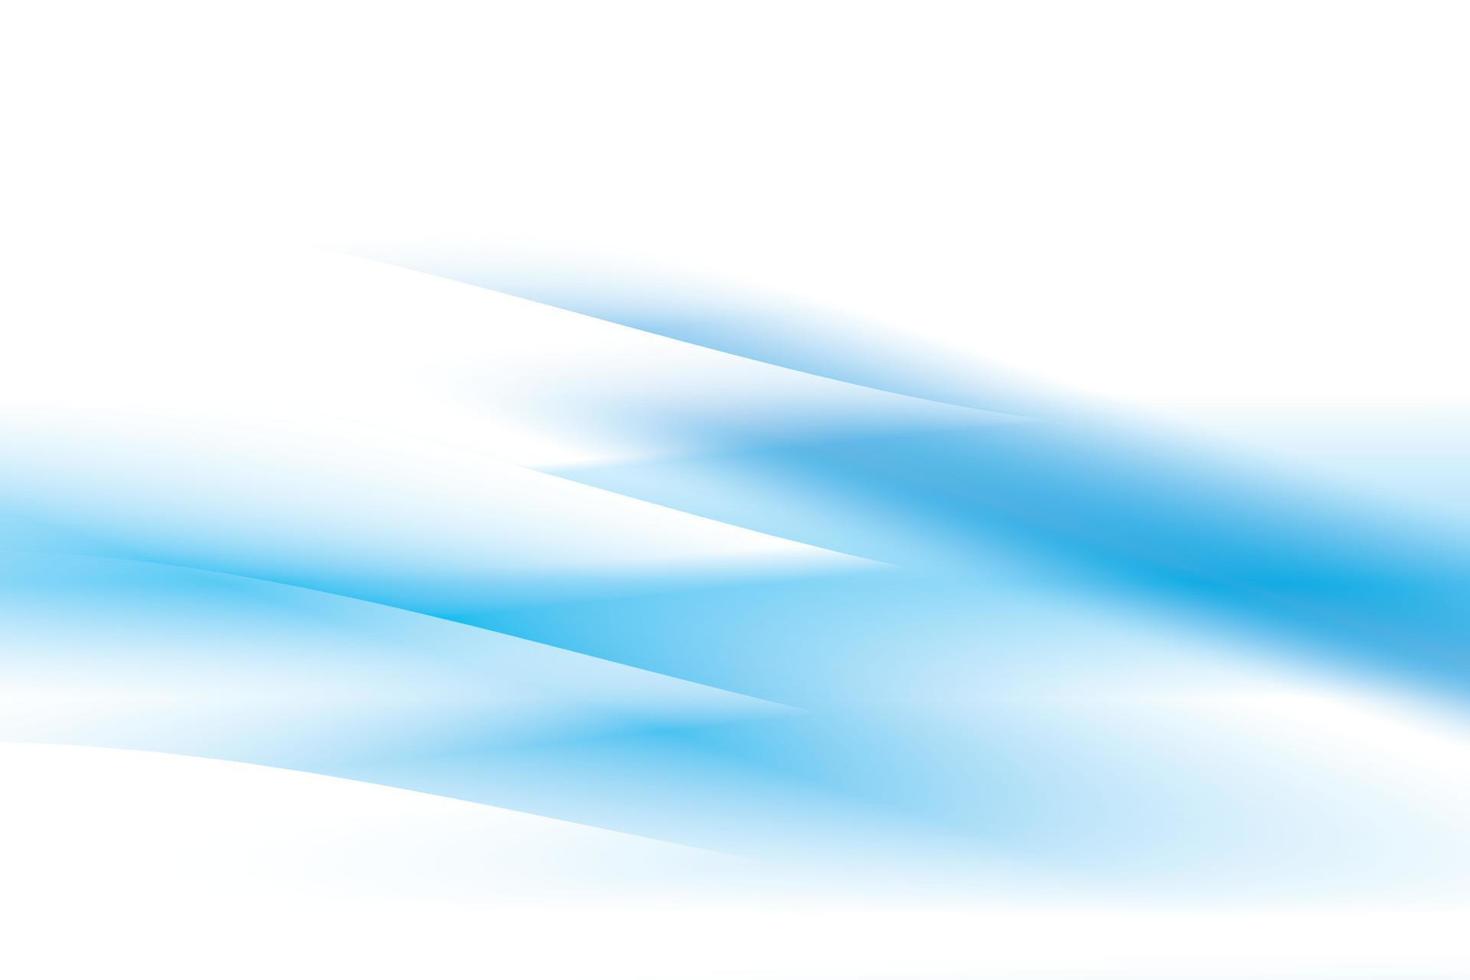 abstrakt vit och blå Färg, modern design bakgrund med geometrisk runda form. vektor illustration.